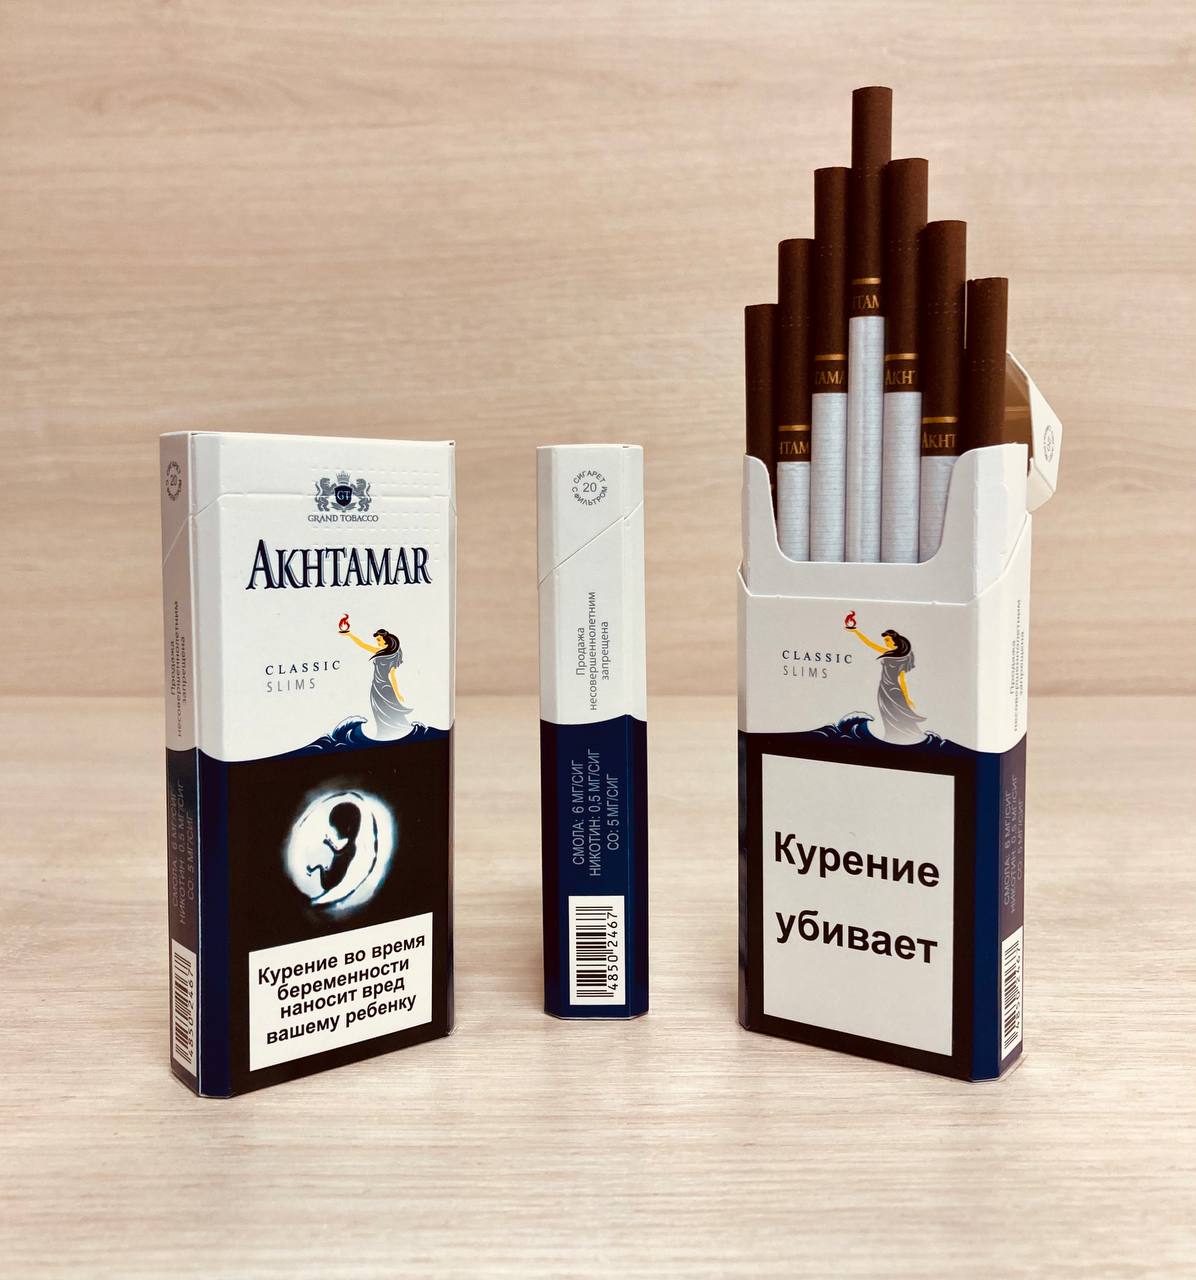 Где купить армянские сигареты. Akhtamar Classic Slims. Сигареты Akhtamar Classic. Армянские сигареты Ахтамар Классик. Сигареты Классик Слимс.